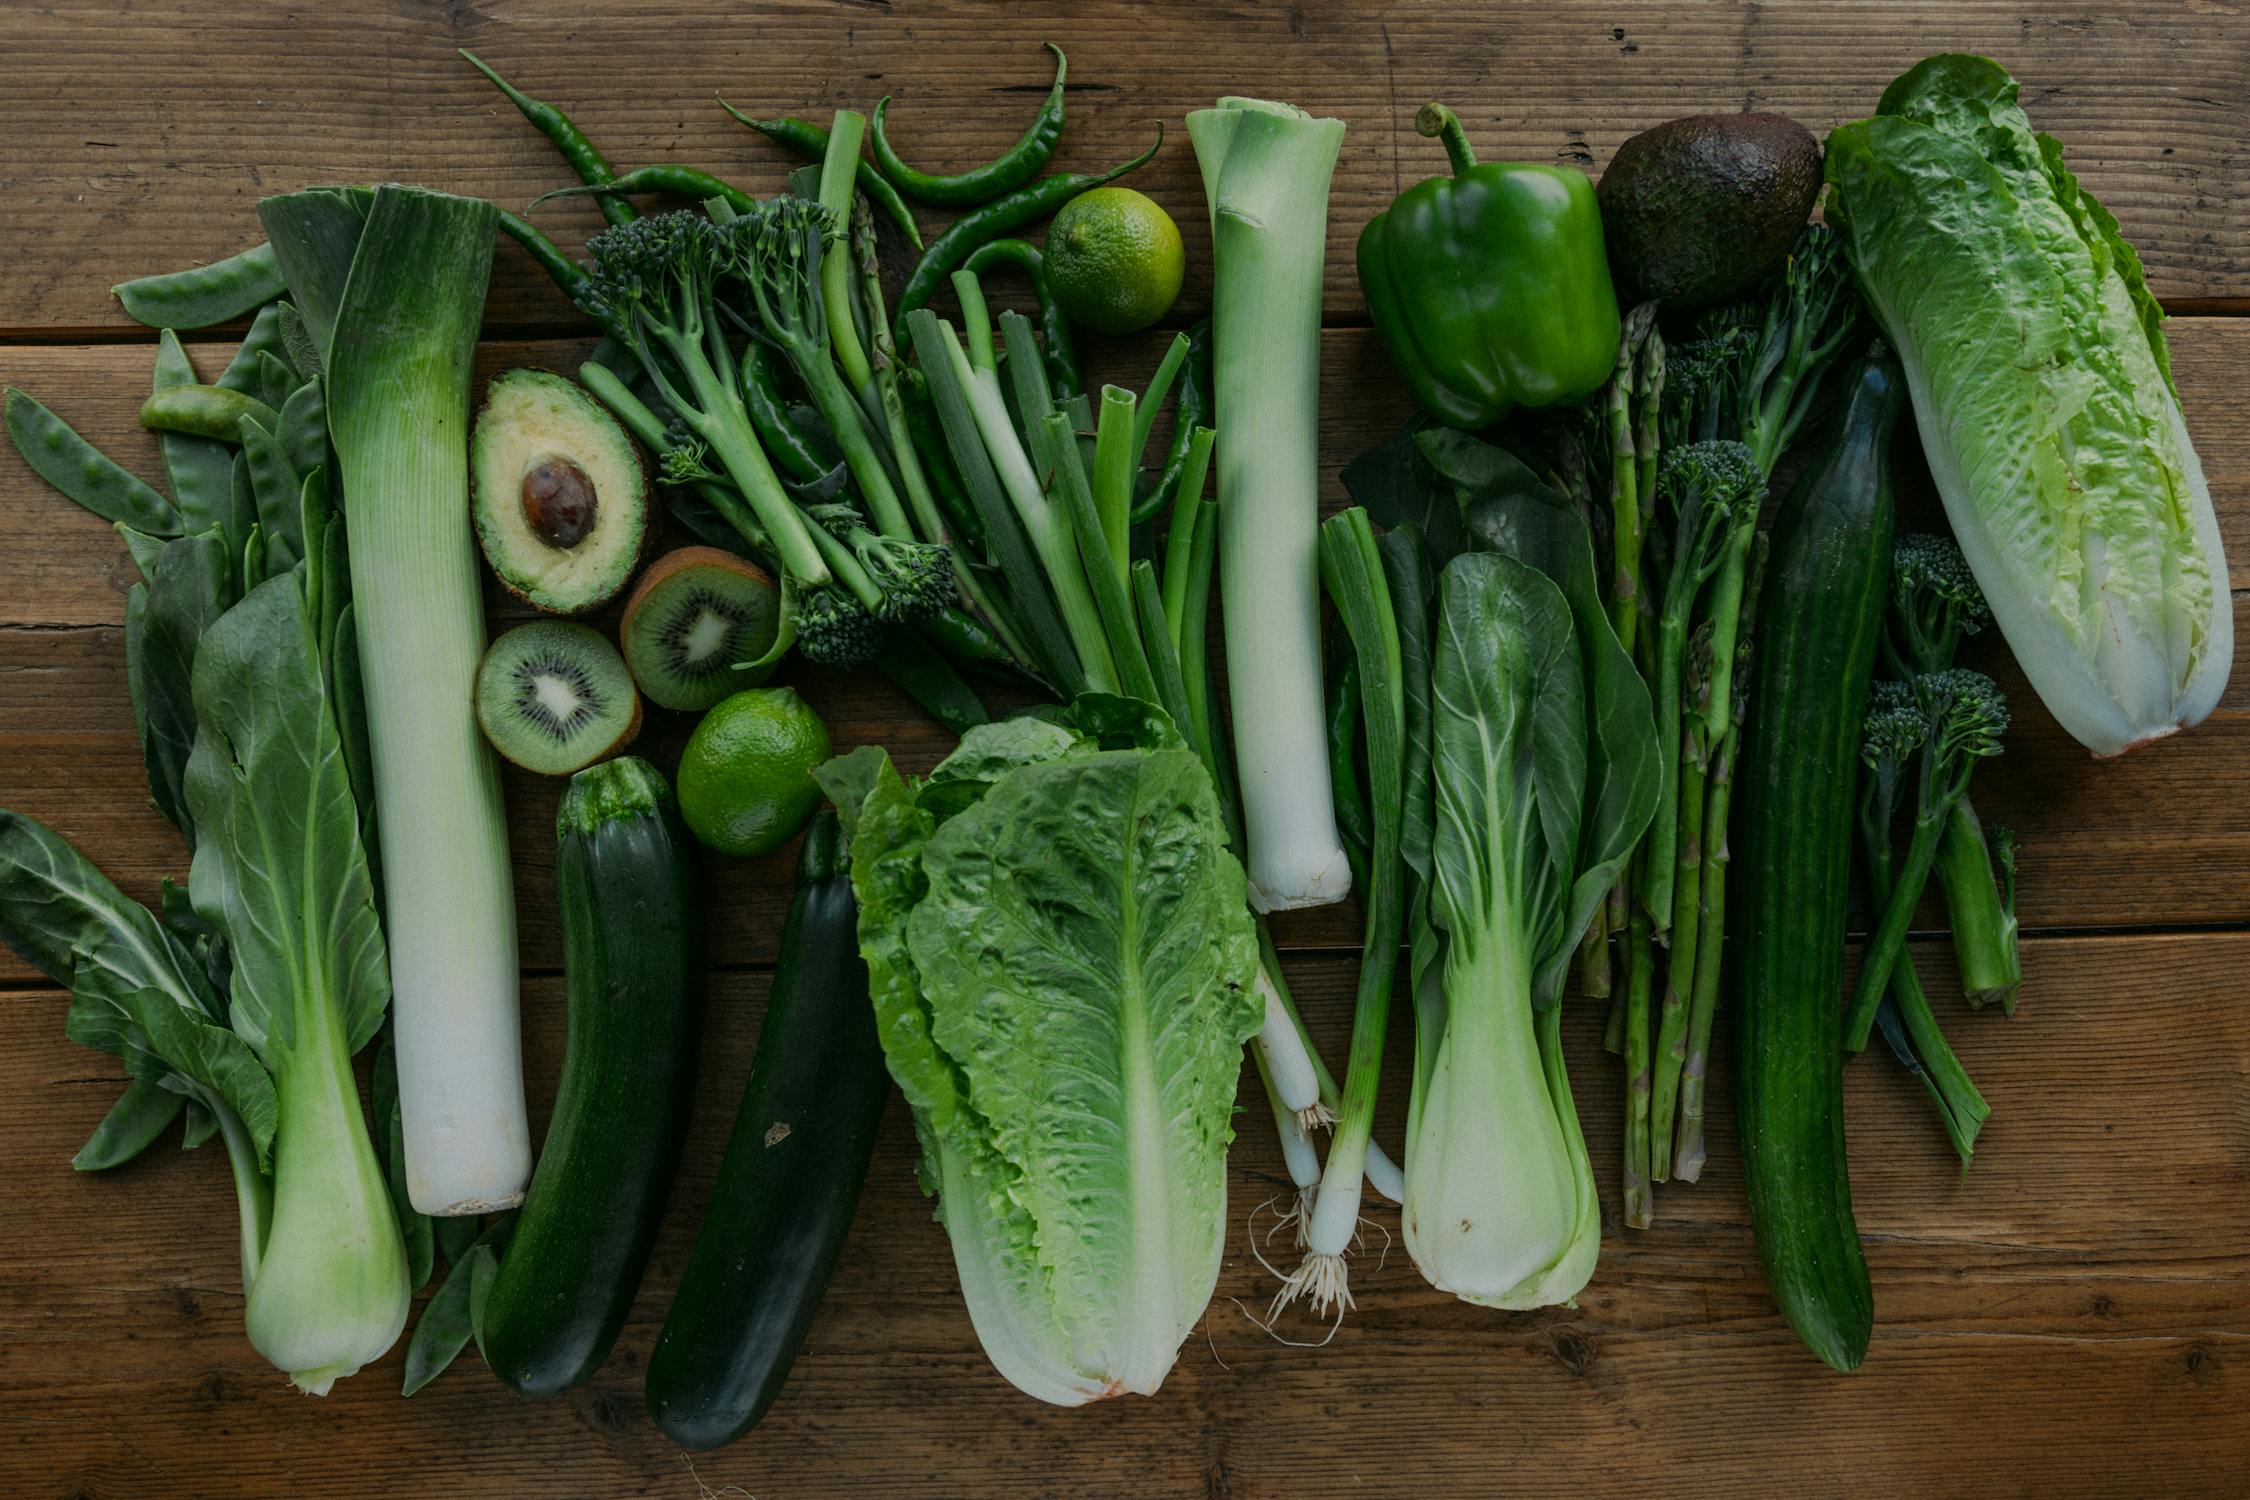 ทานผักใบเขียว! ประโยชน์ของผักใบเขียว